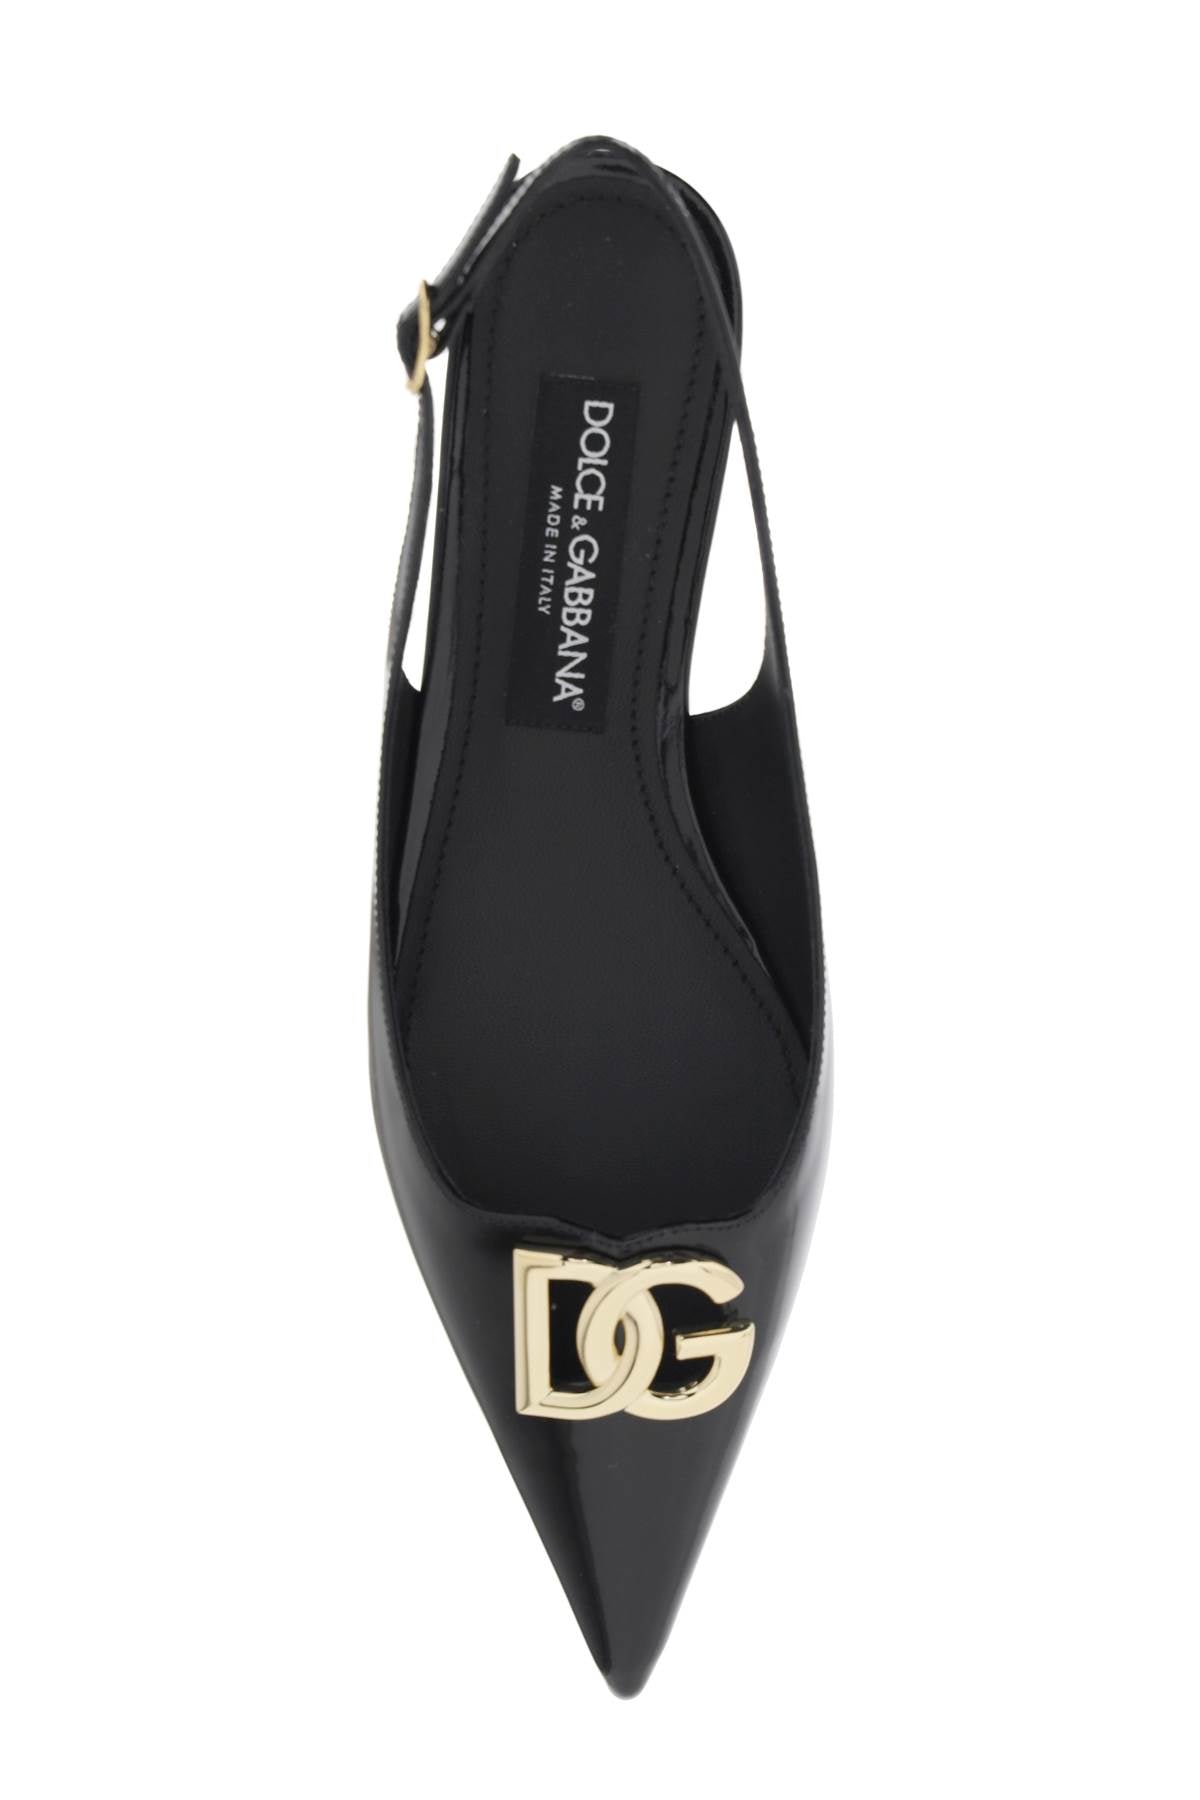 Dolce &amp; Gabbana DG Logo Slingback Ballet Flats Black